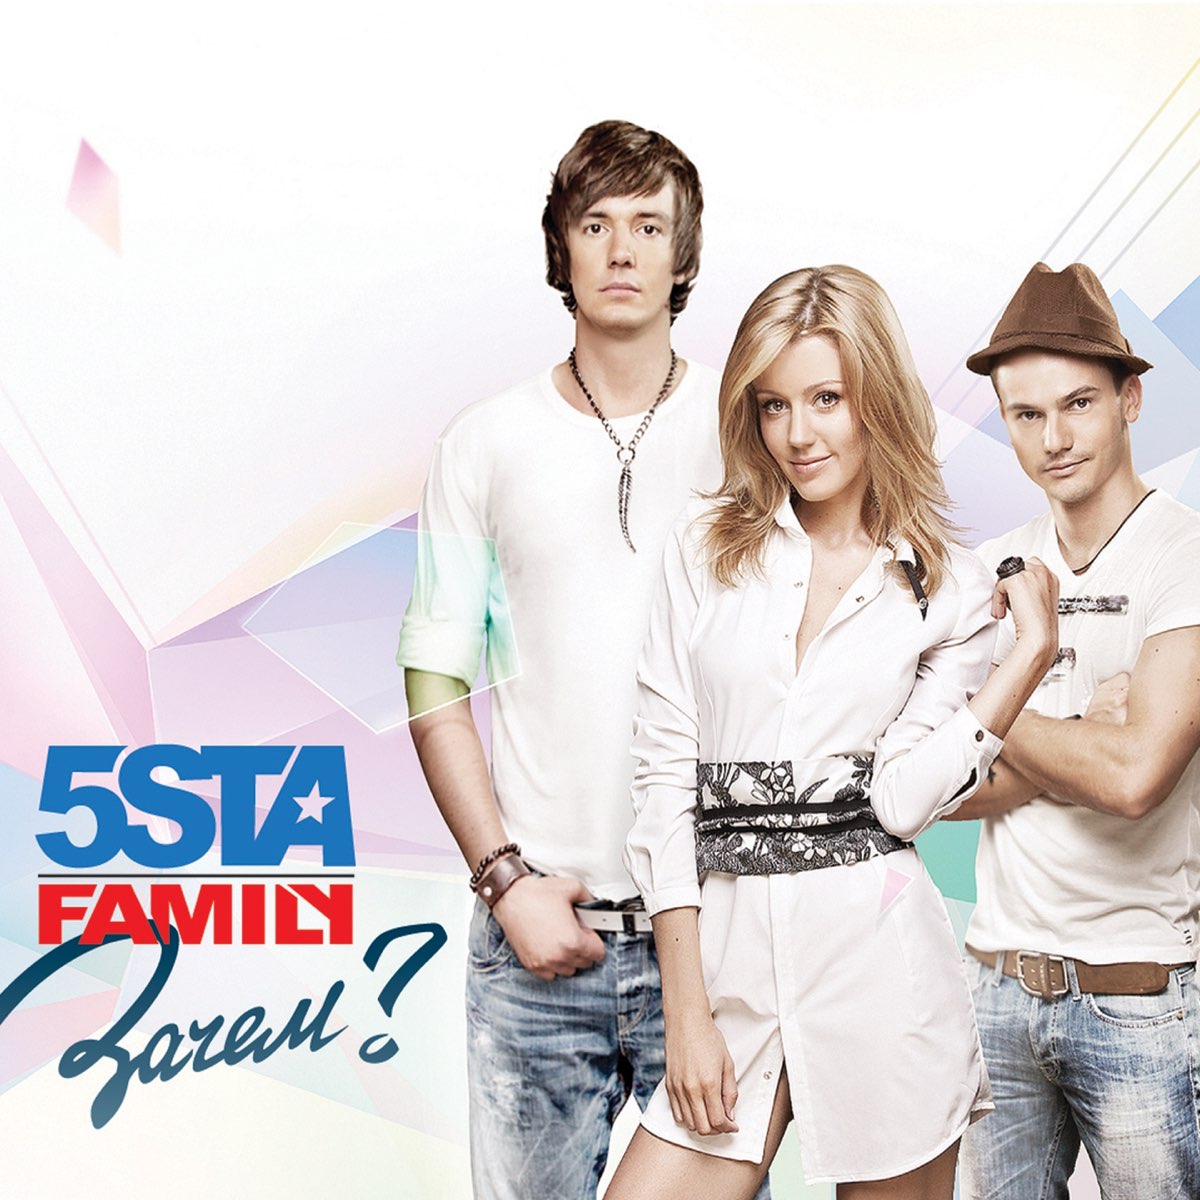 5sta Family Зачем cover artwork